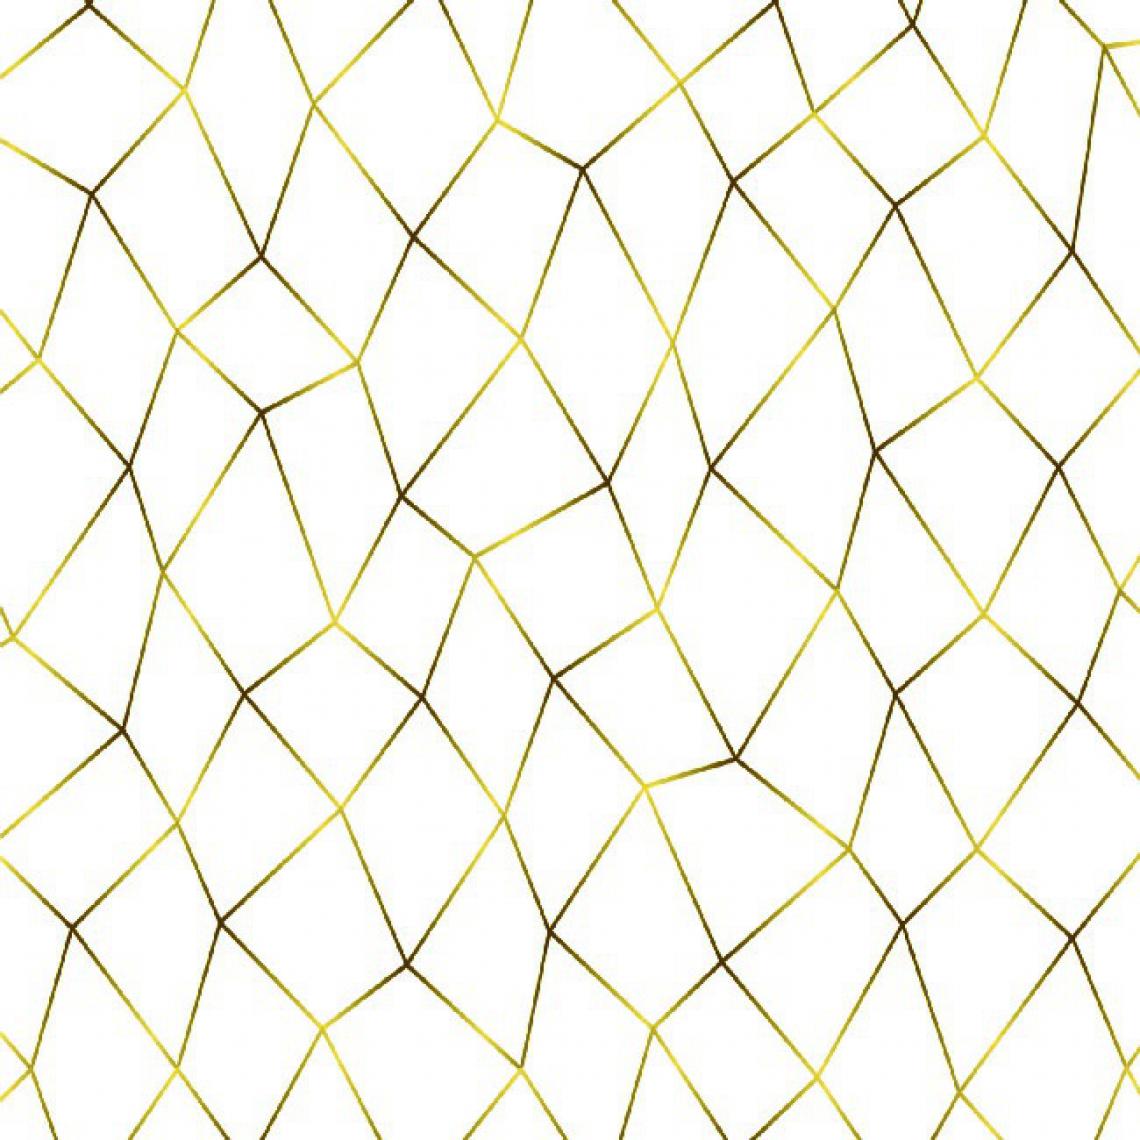 Homemania - HOMEMANIA Tapis Imprimé Modern Choice 4 - Géométrique - Décoration de Maison - Antidérapant - Pour Salon, séjour, chambre à coucher - Multicolore en Polyester, Coton, 100 x 150 cm - Tapis